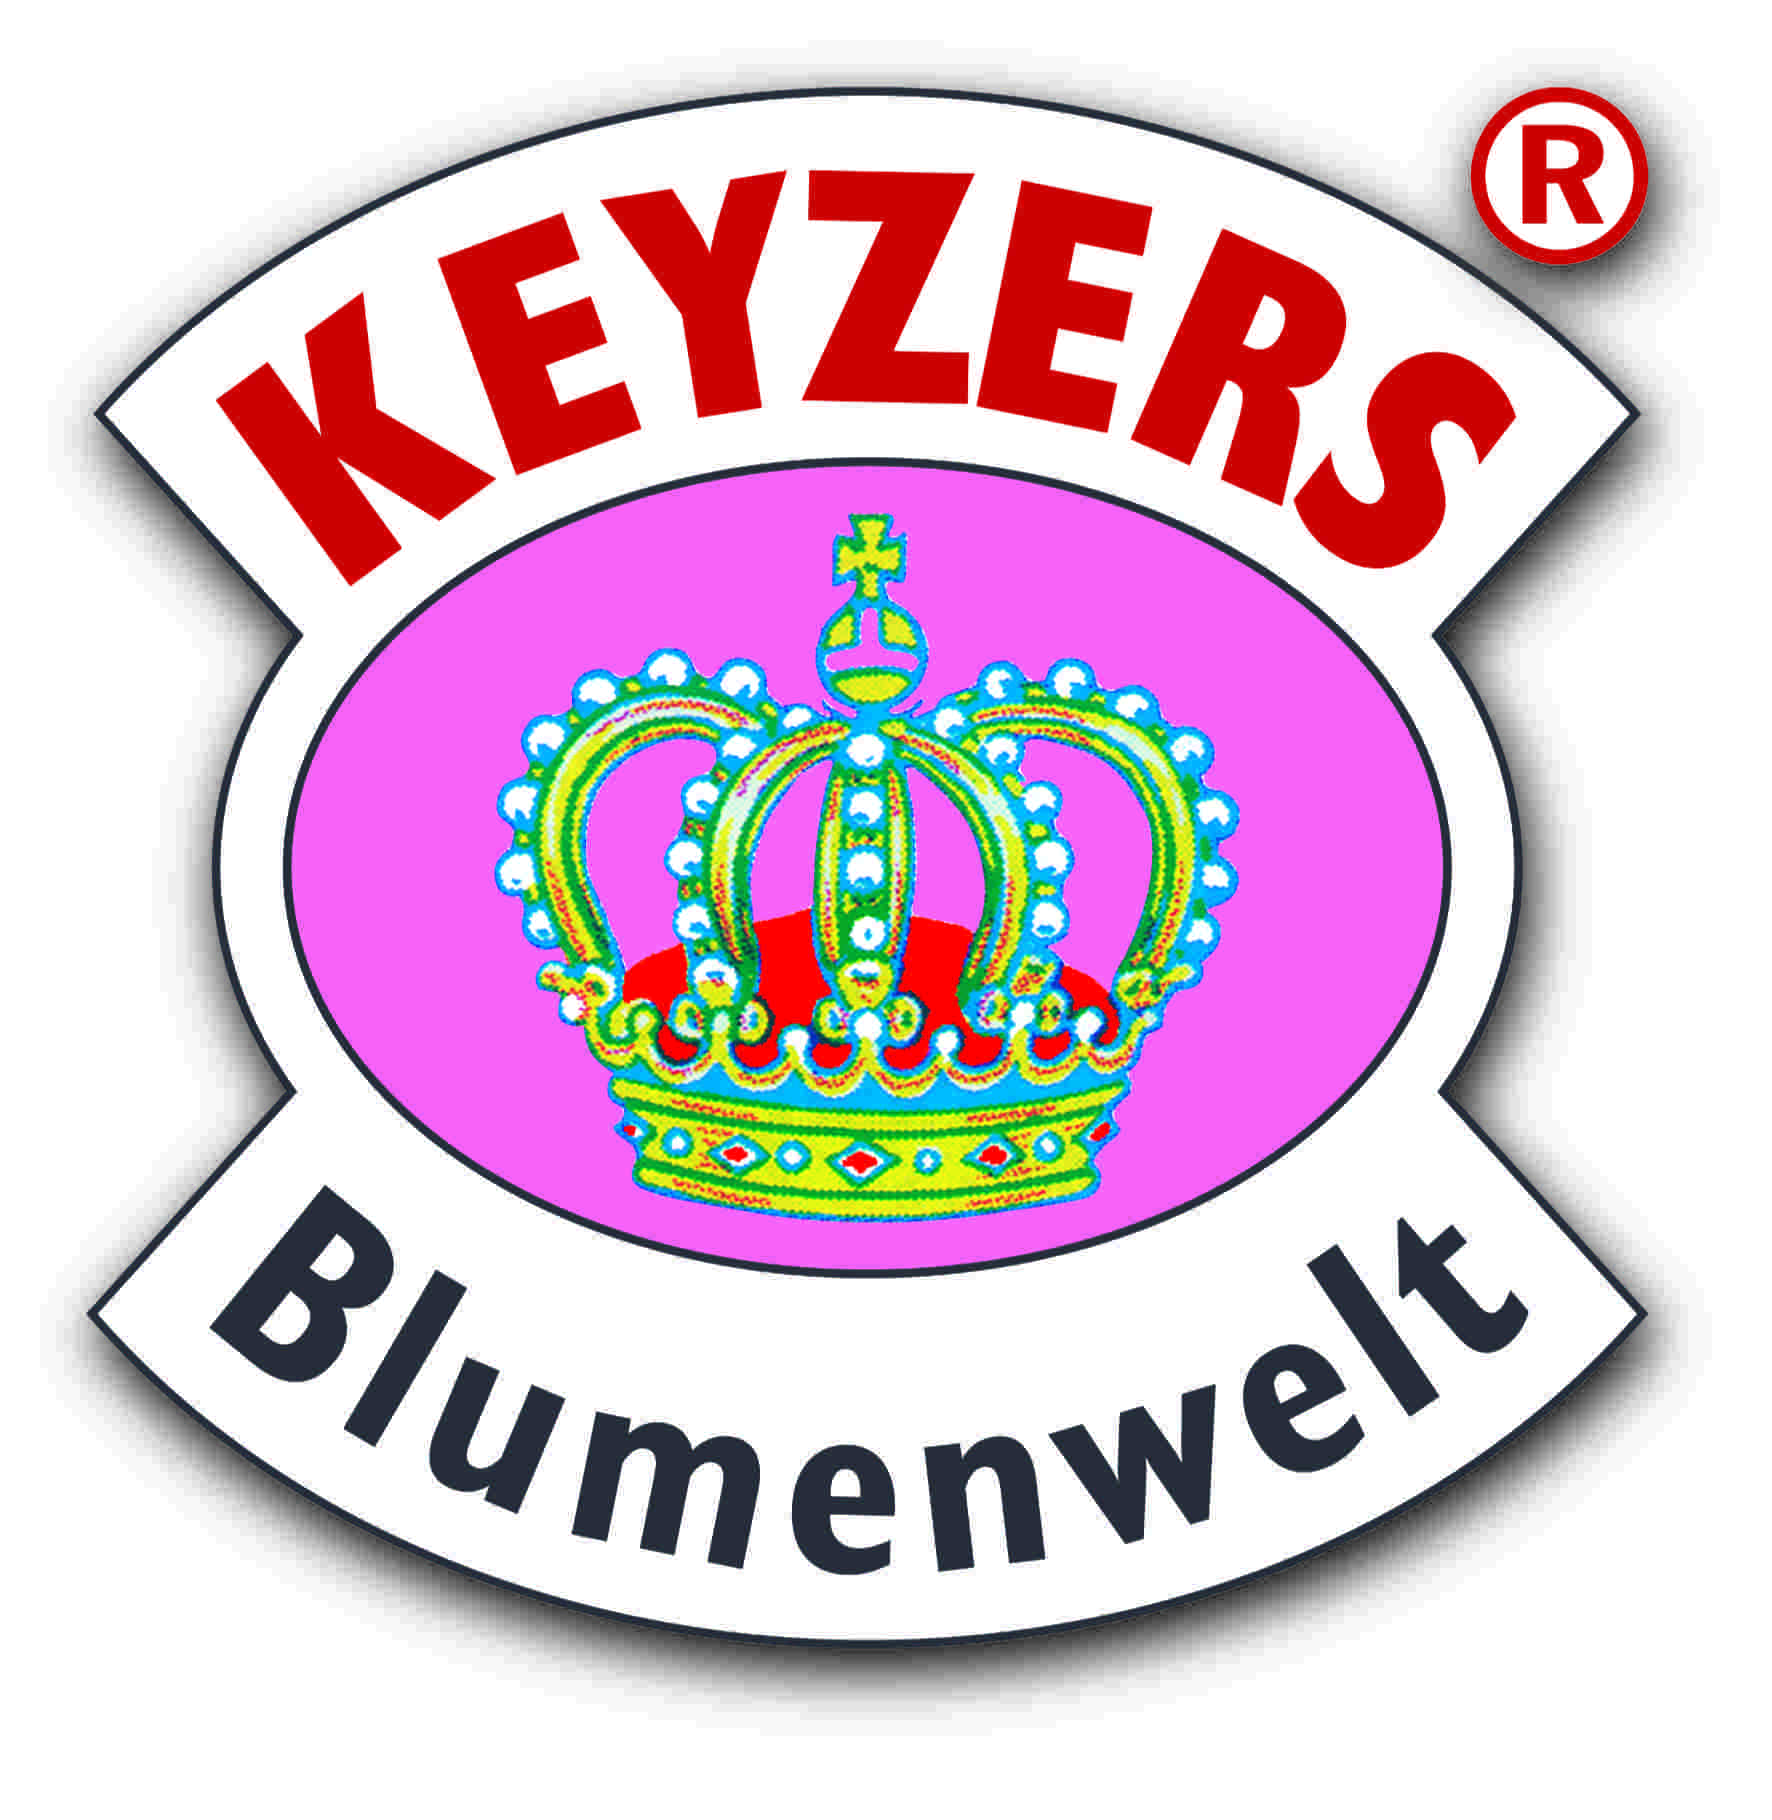 KEYZERS® Pflanzen- und Blumenwelt GmbH